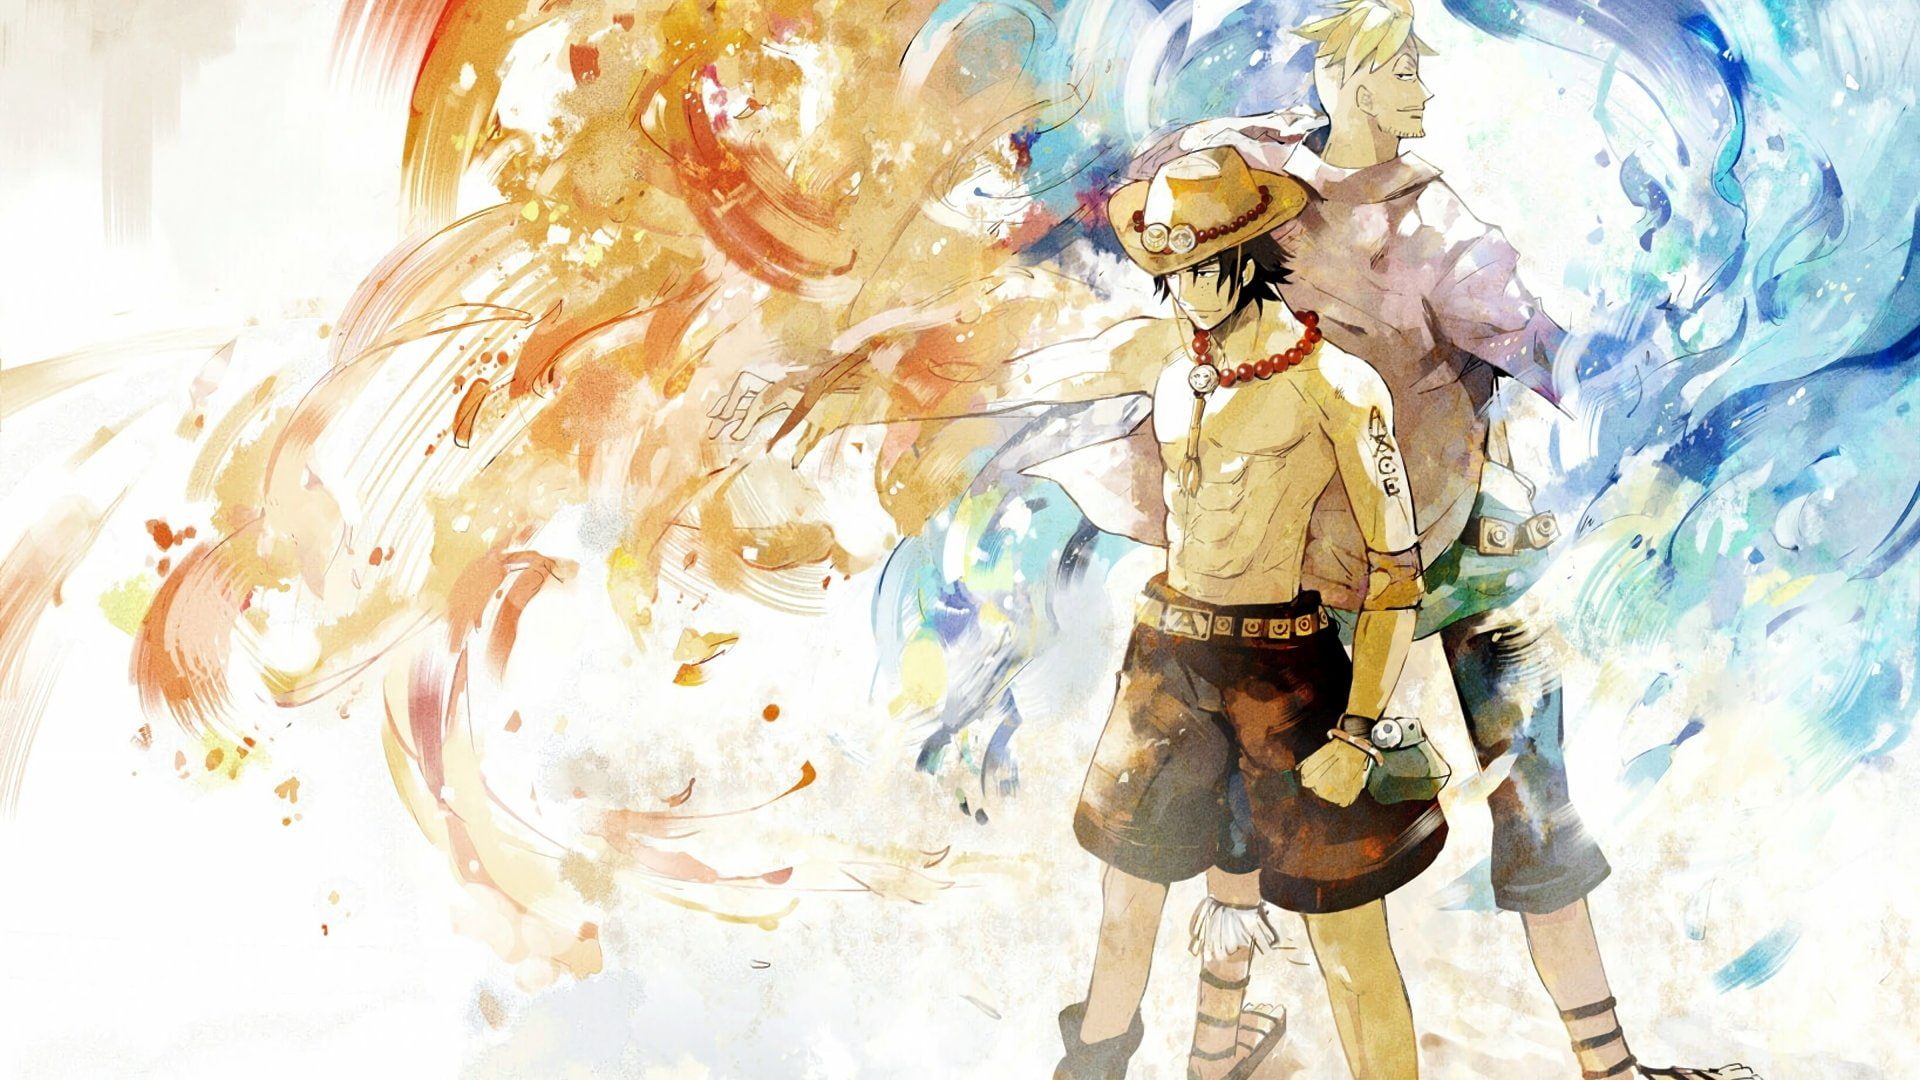 HD wallpaper: Anime, One Piece, Fire, Marco (One Piece), Pirate, Portgas D. Ace. Portgas d. ace wallpaper, Anime one, Phoenix wallpaper